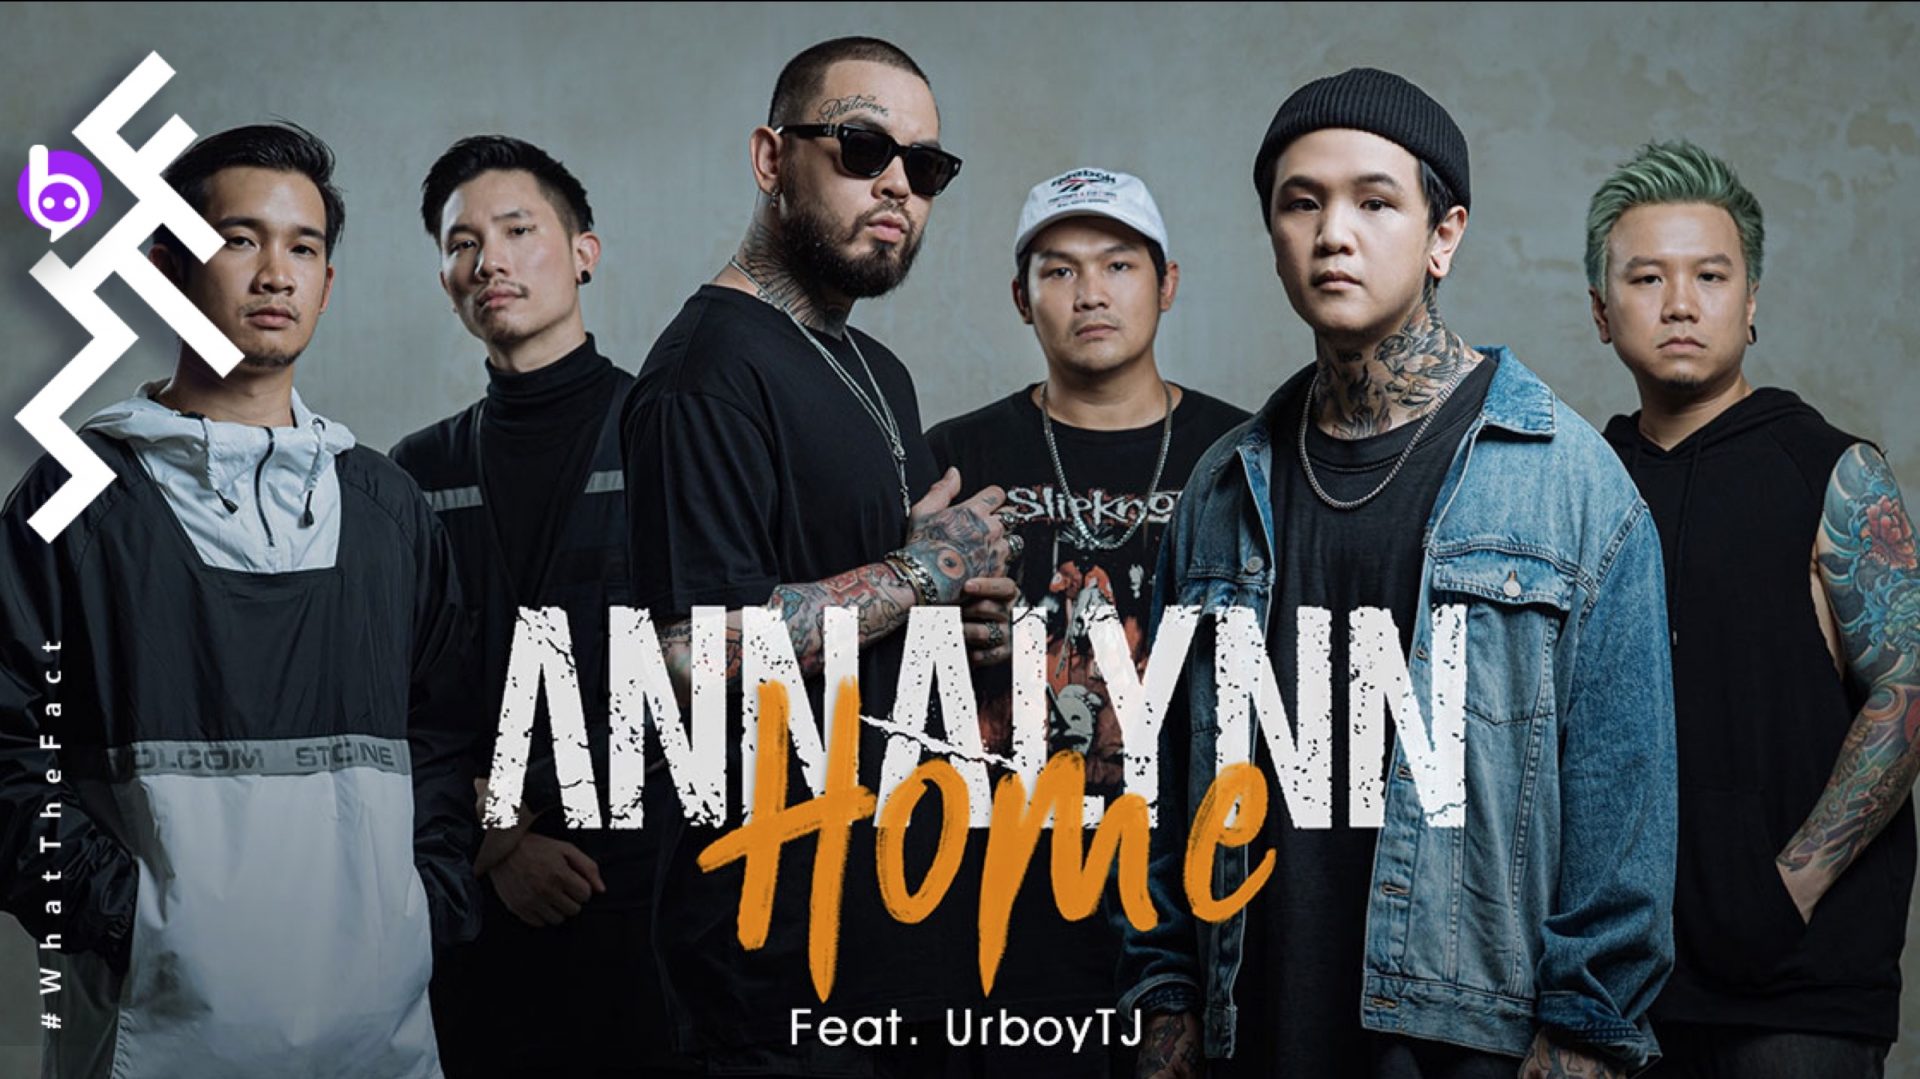 “Home” บทเพลงให้กำลังใจจากเมทัลคอร์เลือดไทย “Annalynn” โดนใจได้ UrboyTJ มาร่วมแร็ป